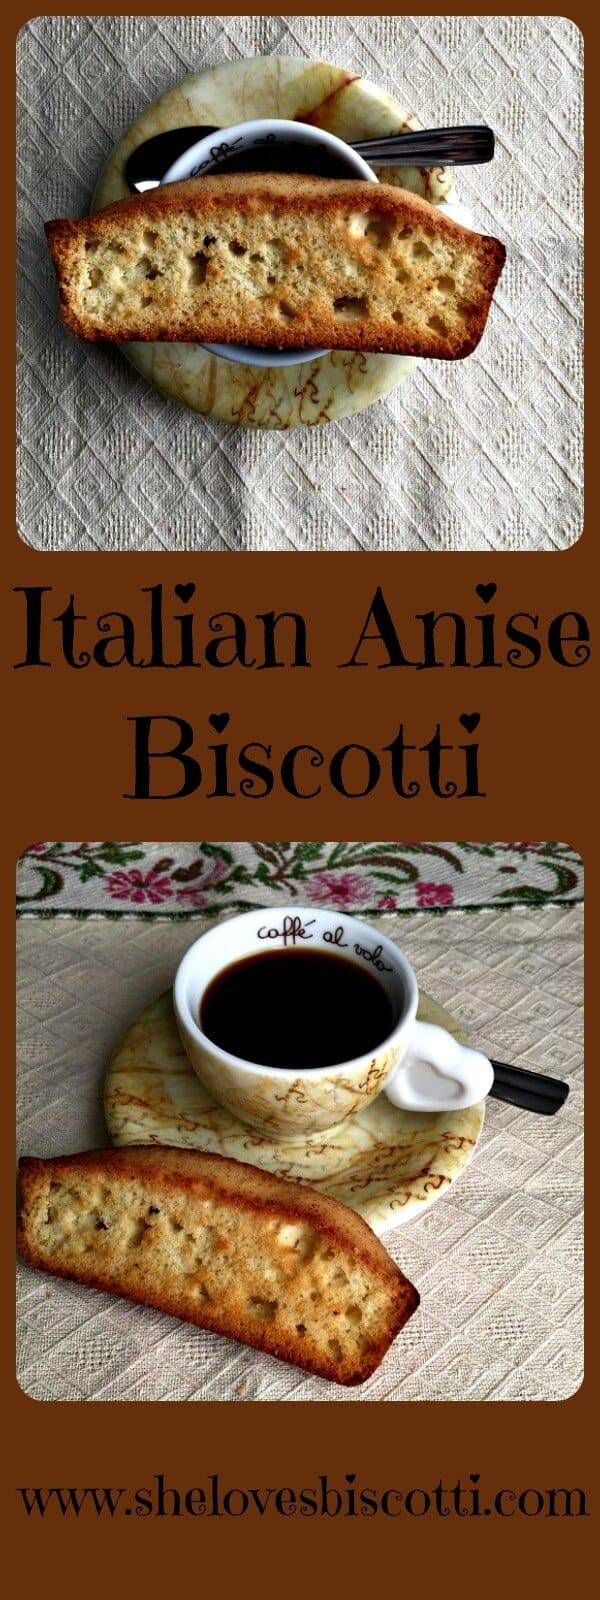 True Italian Biscotti Recipes
 Authentic Italian Anise Biscotti She loves biscotti